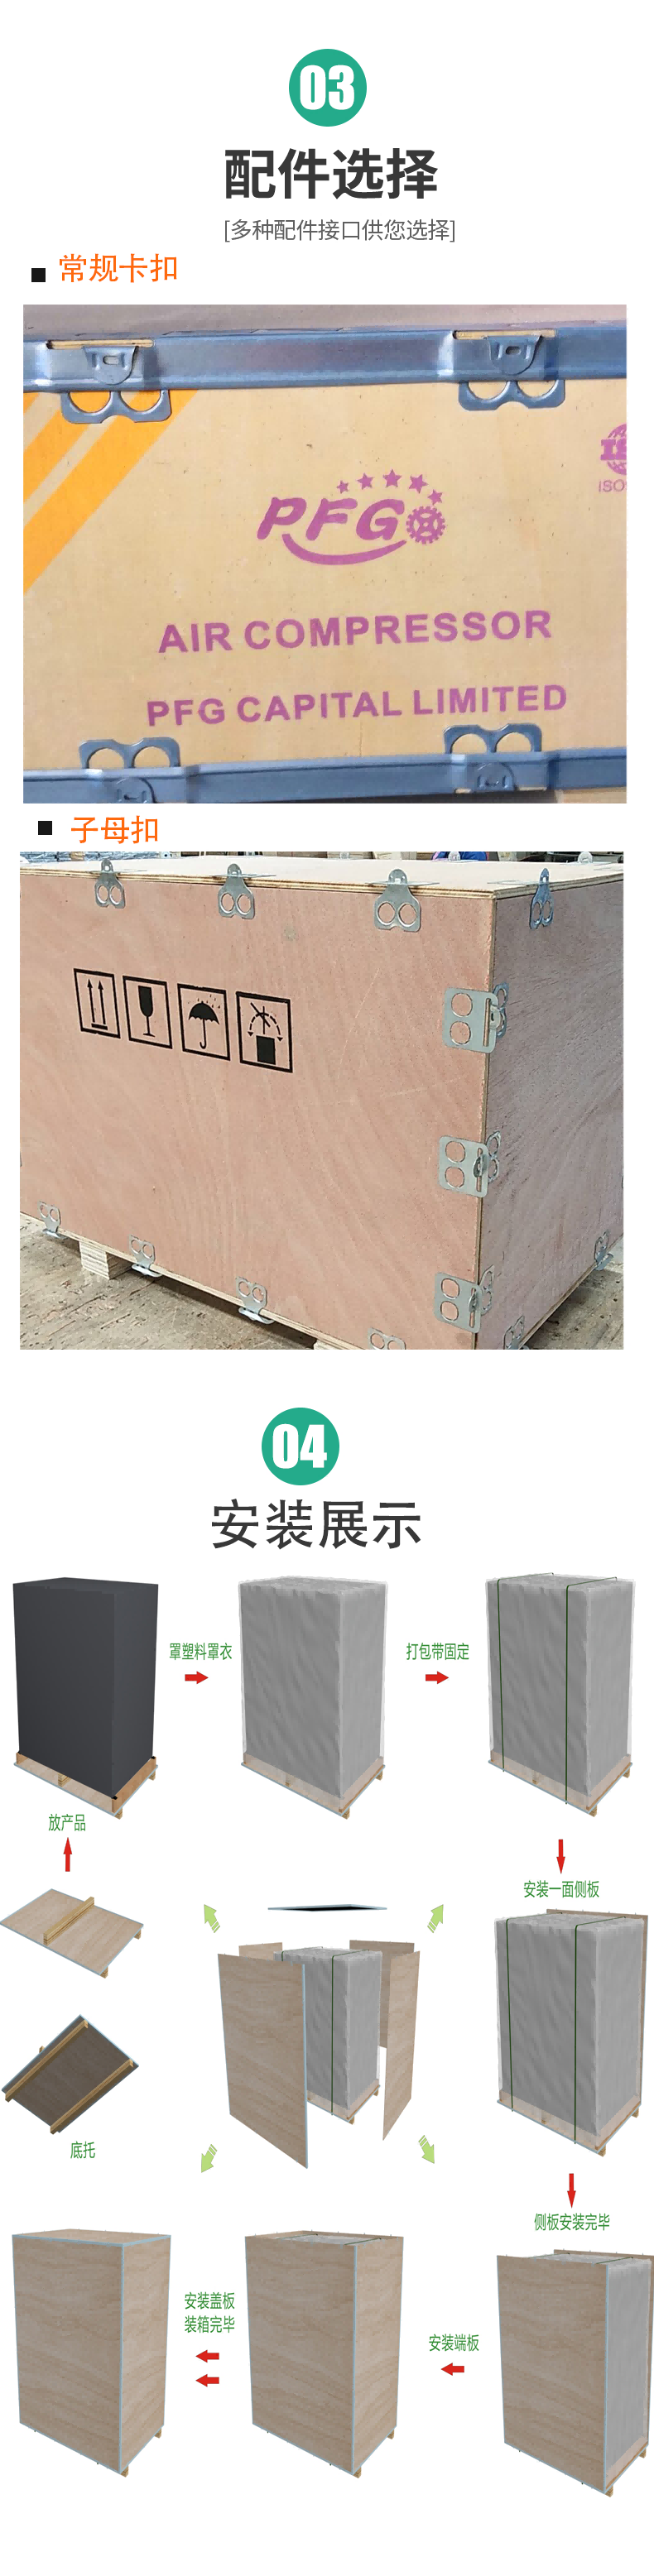 Aluminum foil paper bag, wooden packing case, moisture-proof export, wooden case, steel edge box, customized, providing door-to-door measurement service